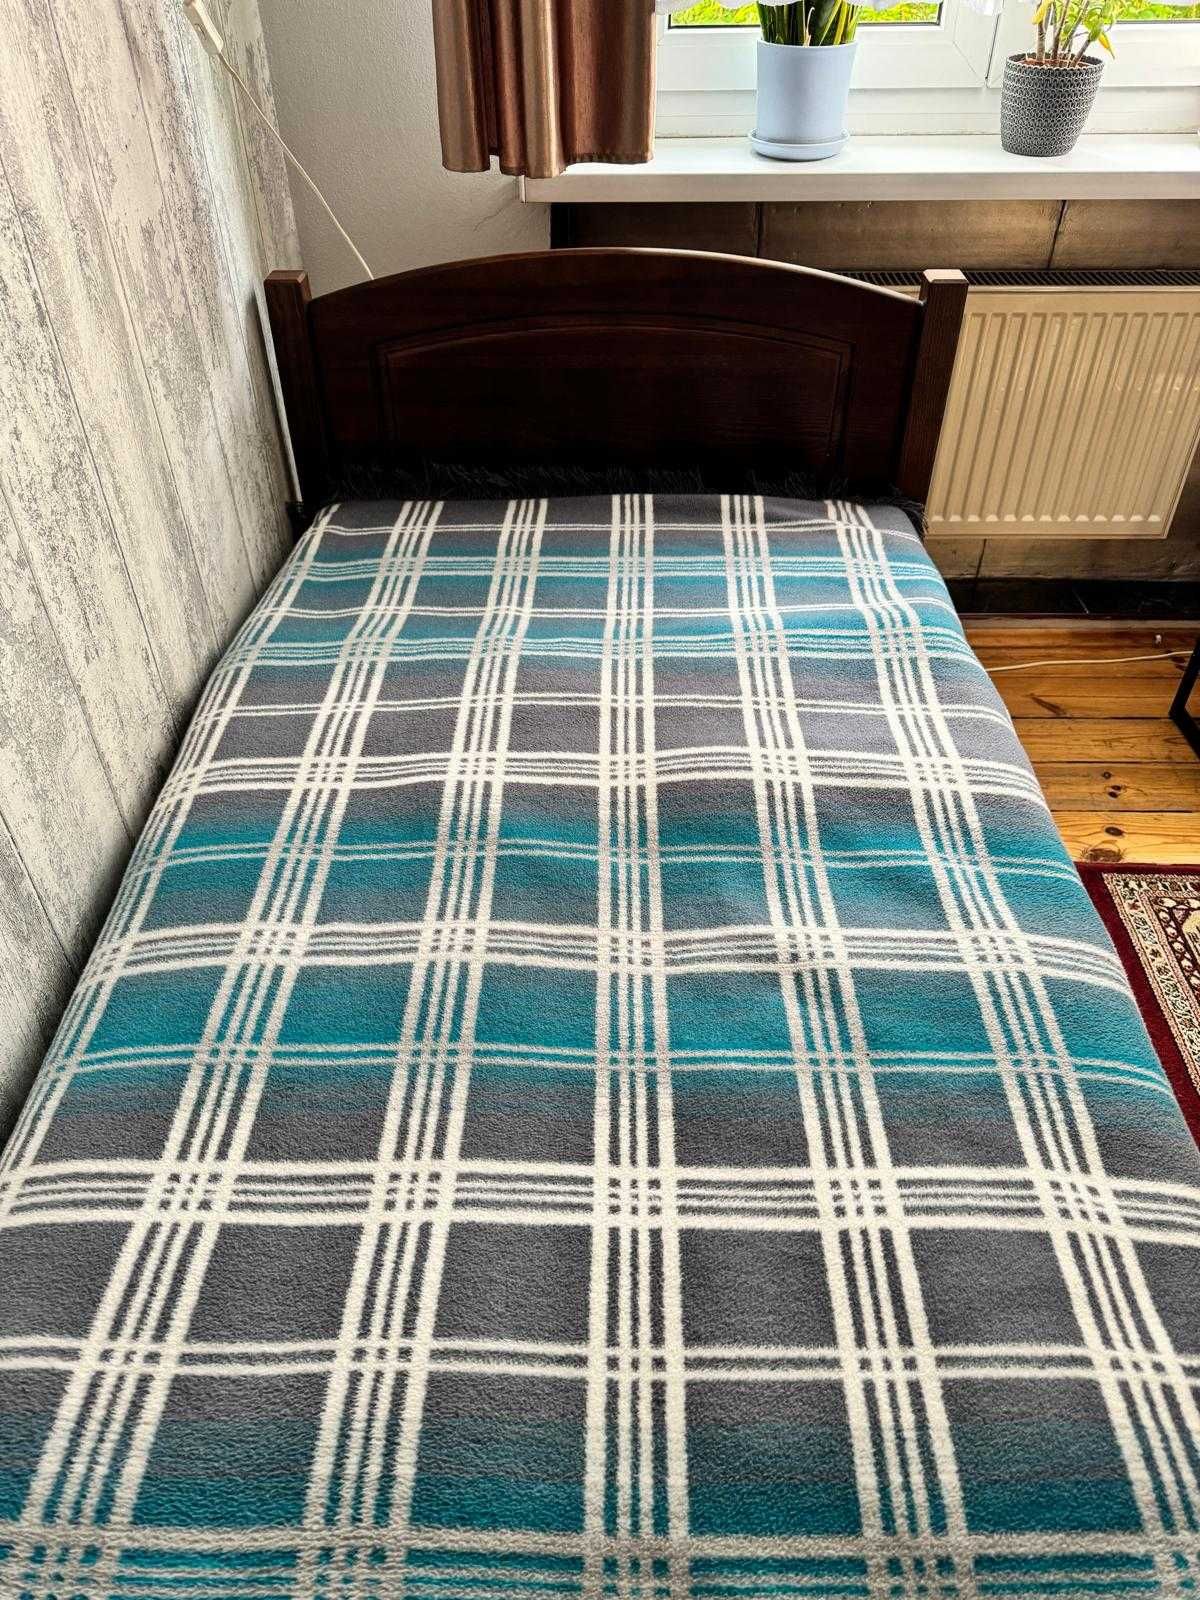 łóżko 1-osobowe, drewniane, 100x210 (90x200)